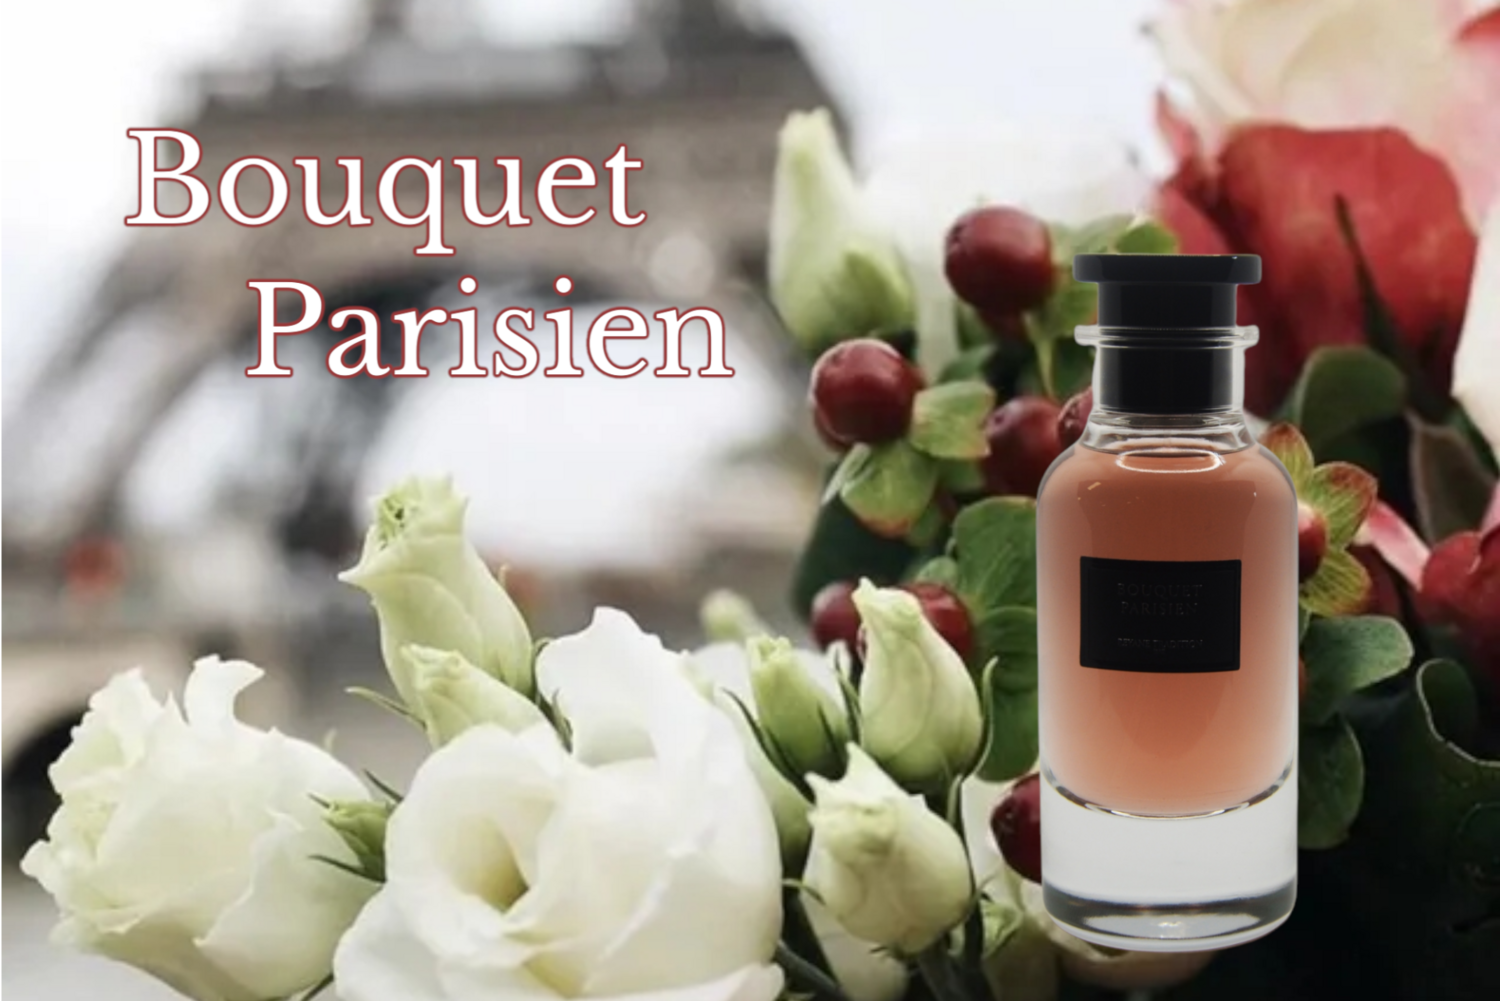 Bouquet Parisien